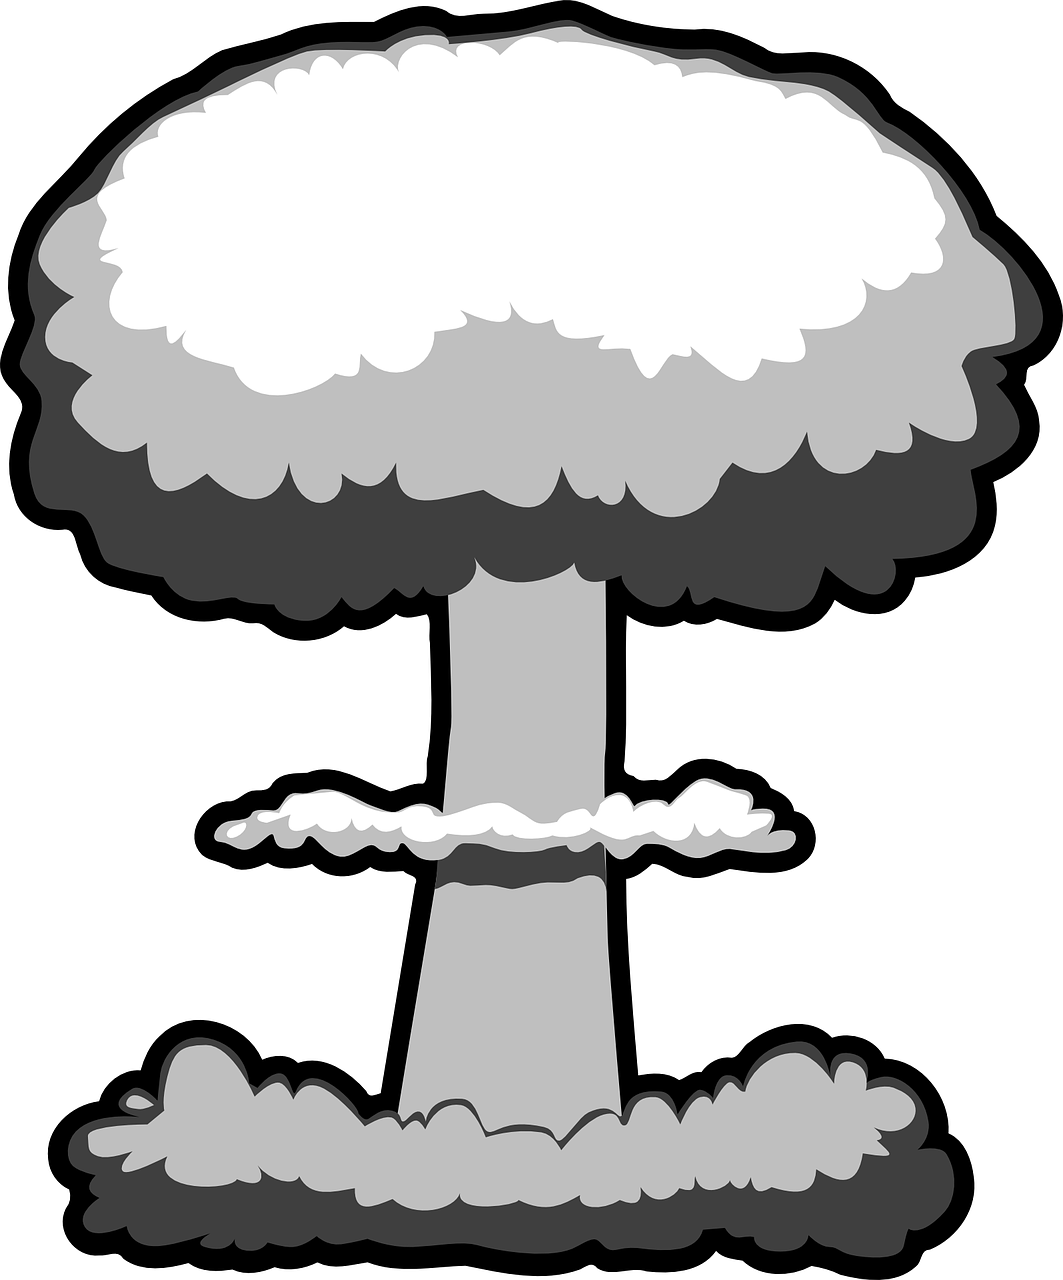 Explosion Clipart Mushroom Cloud Nuclear Explosion Clip Art